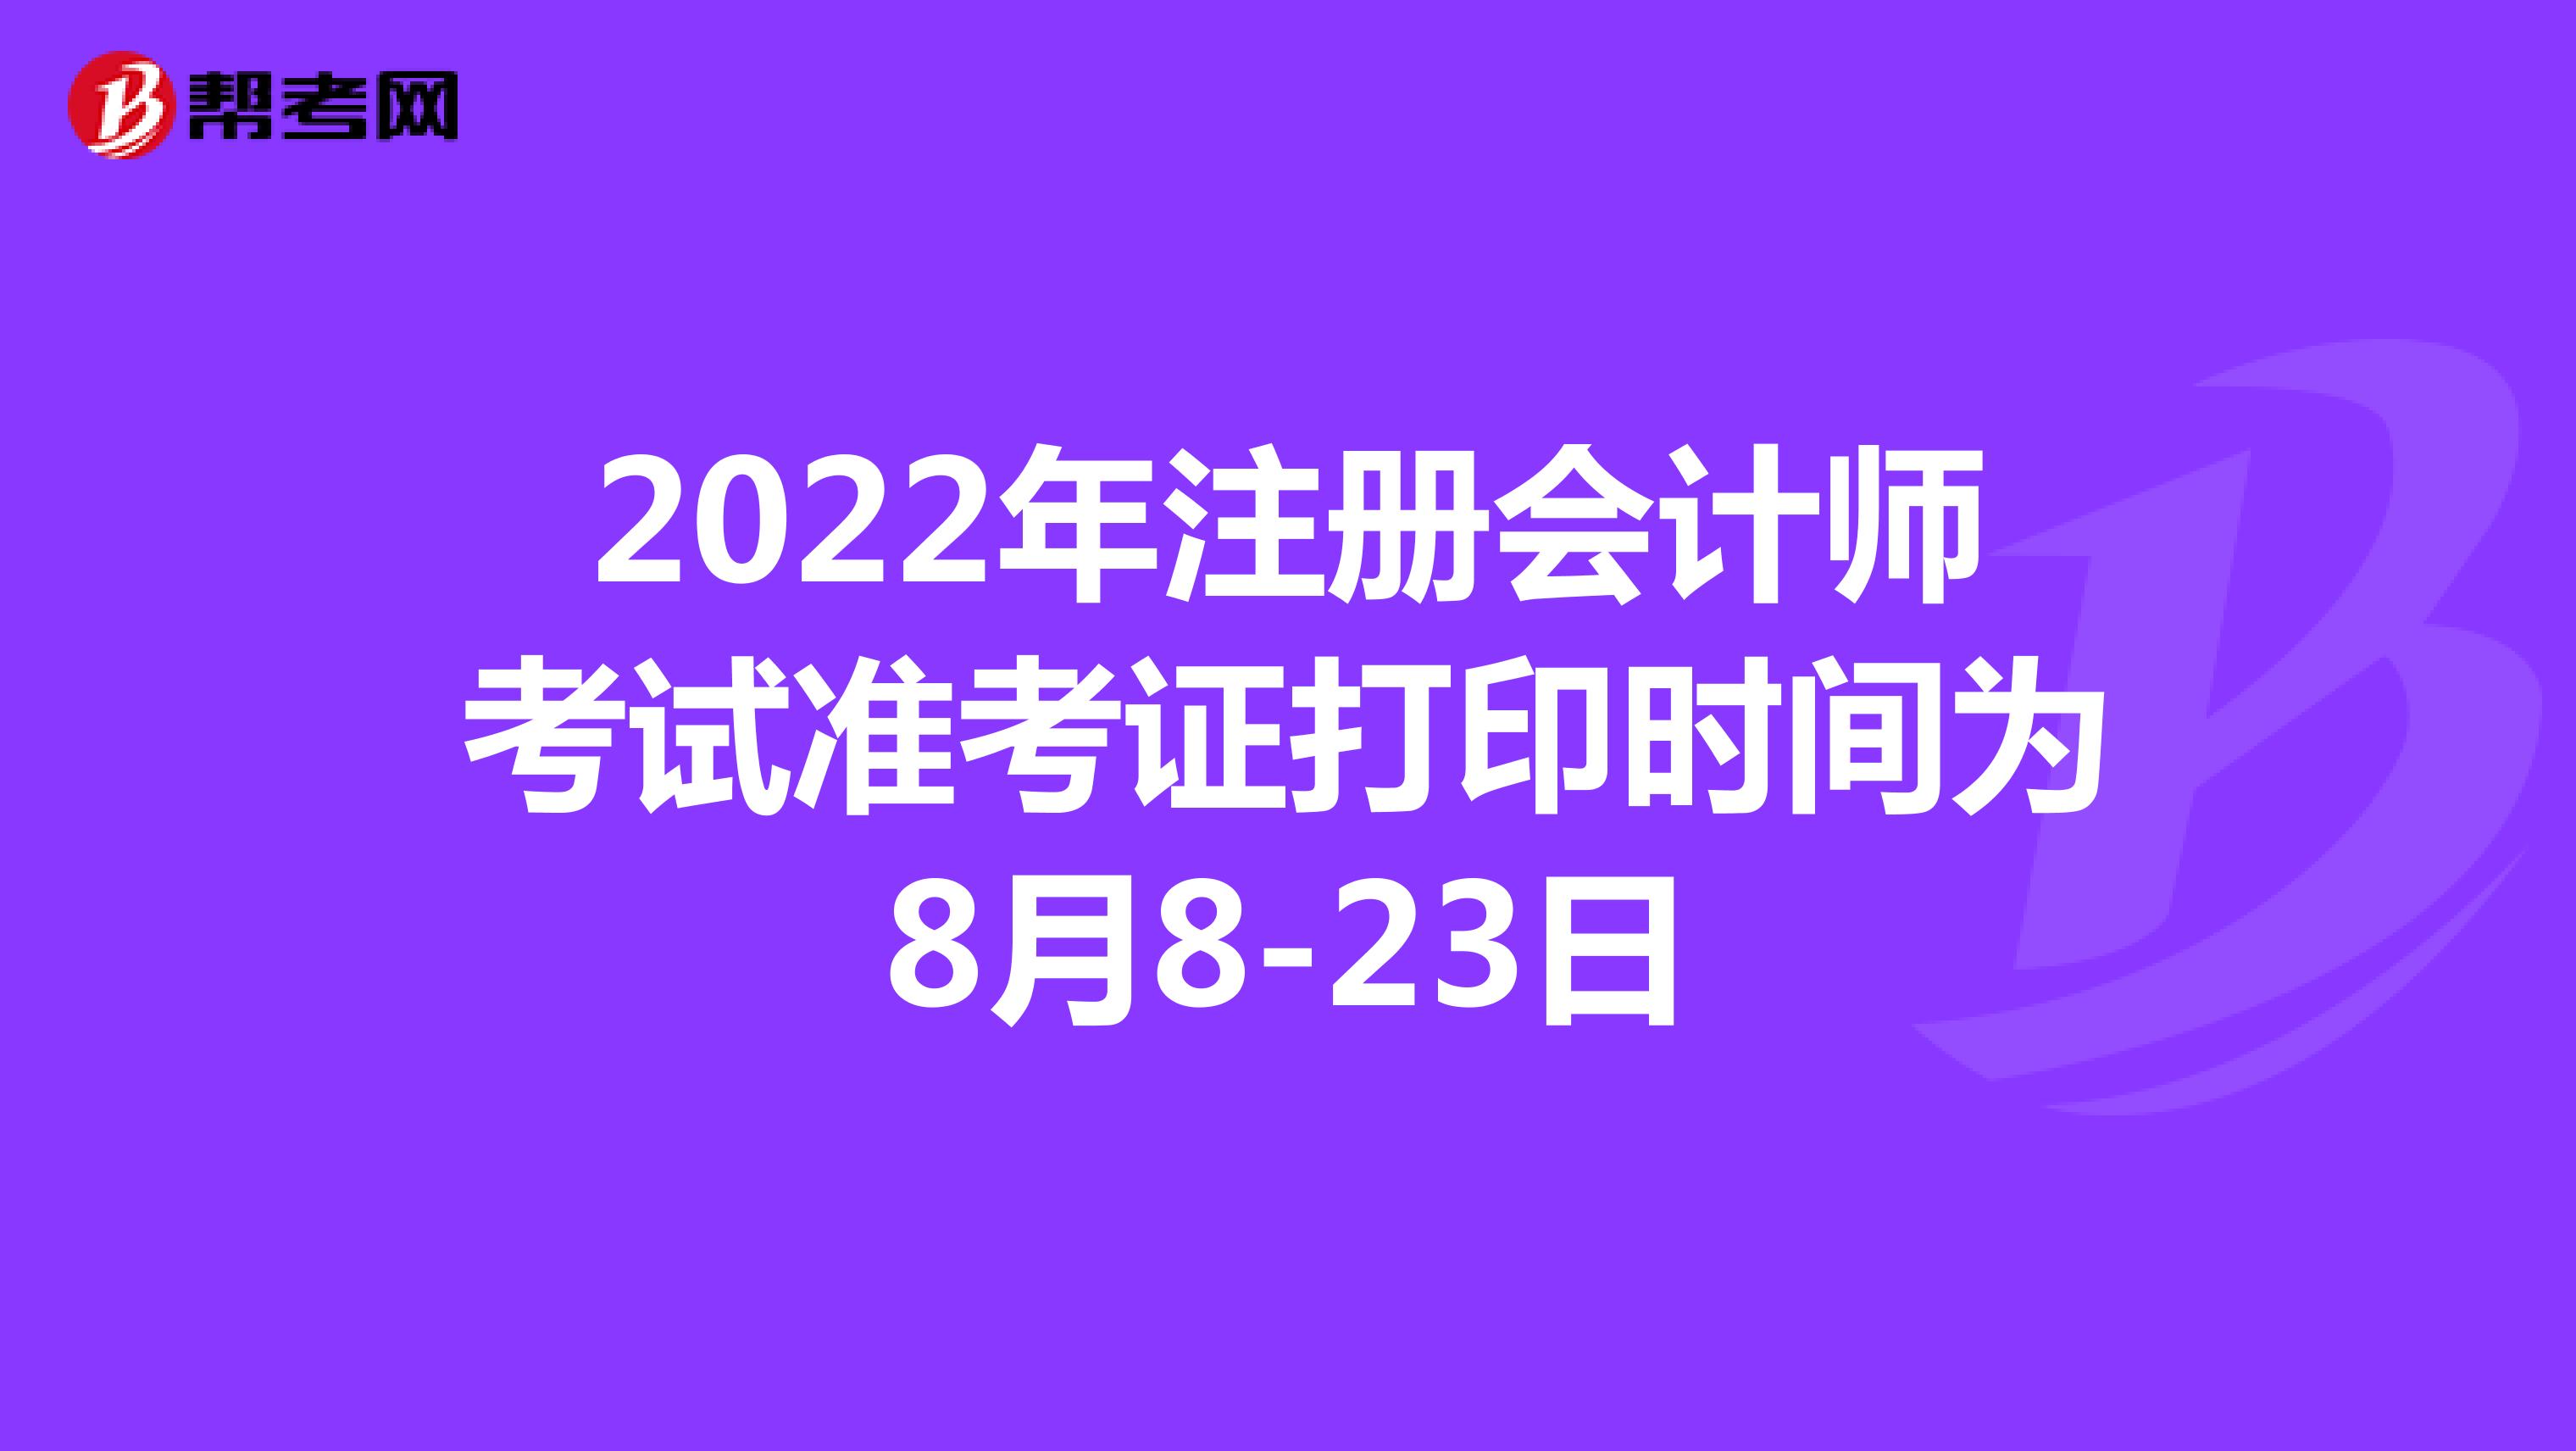 2022年注册会计师考试准考证打印时间为8月8-23日